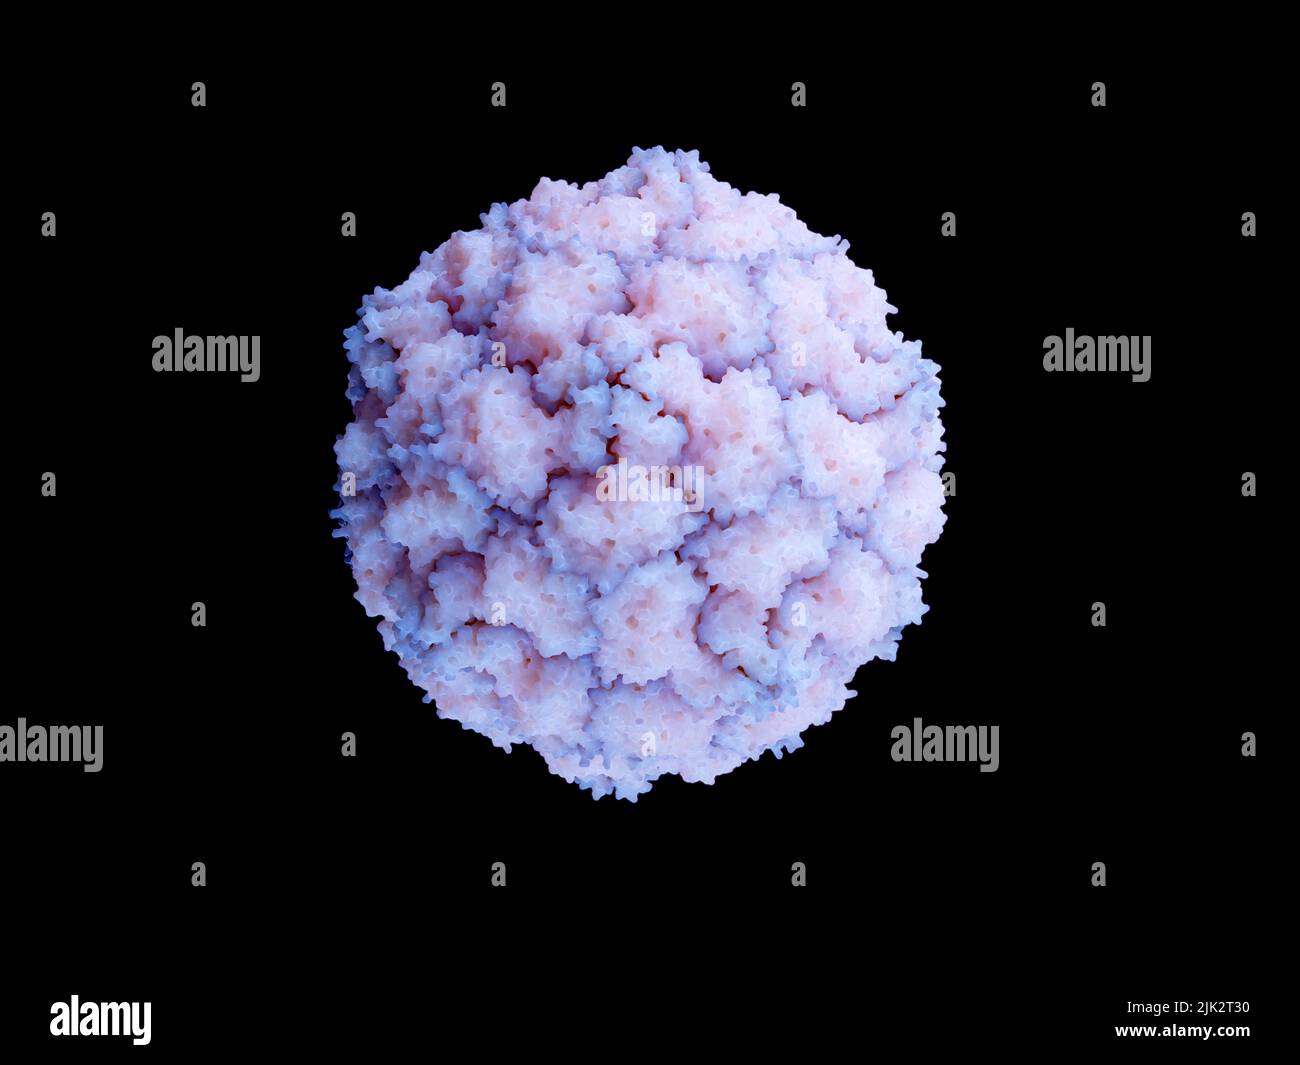 Abbildung zeigt ein humanes Echovirus 18 (E-18), ein Mitglied der Enterovirus-B-Spezies und ein Erreger, der viele Ausbrüche von aseptischer Meningitis und Gehirnentzündung verursacht hat. Stockfoto